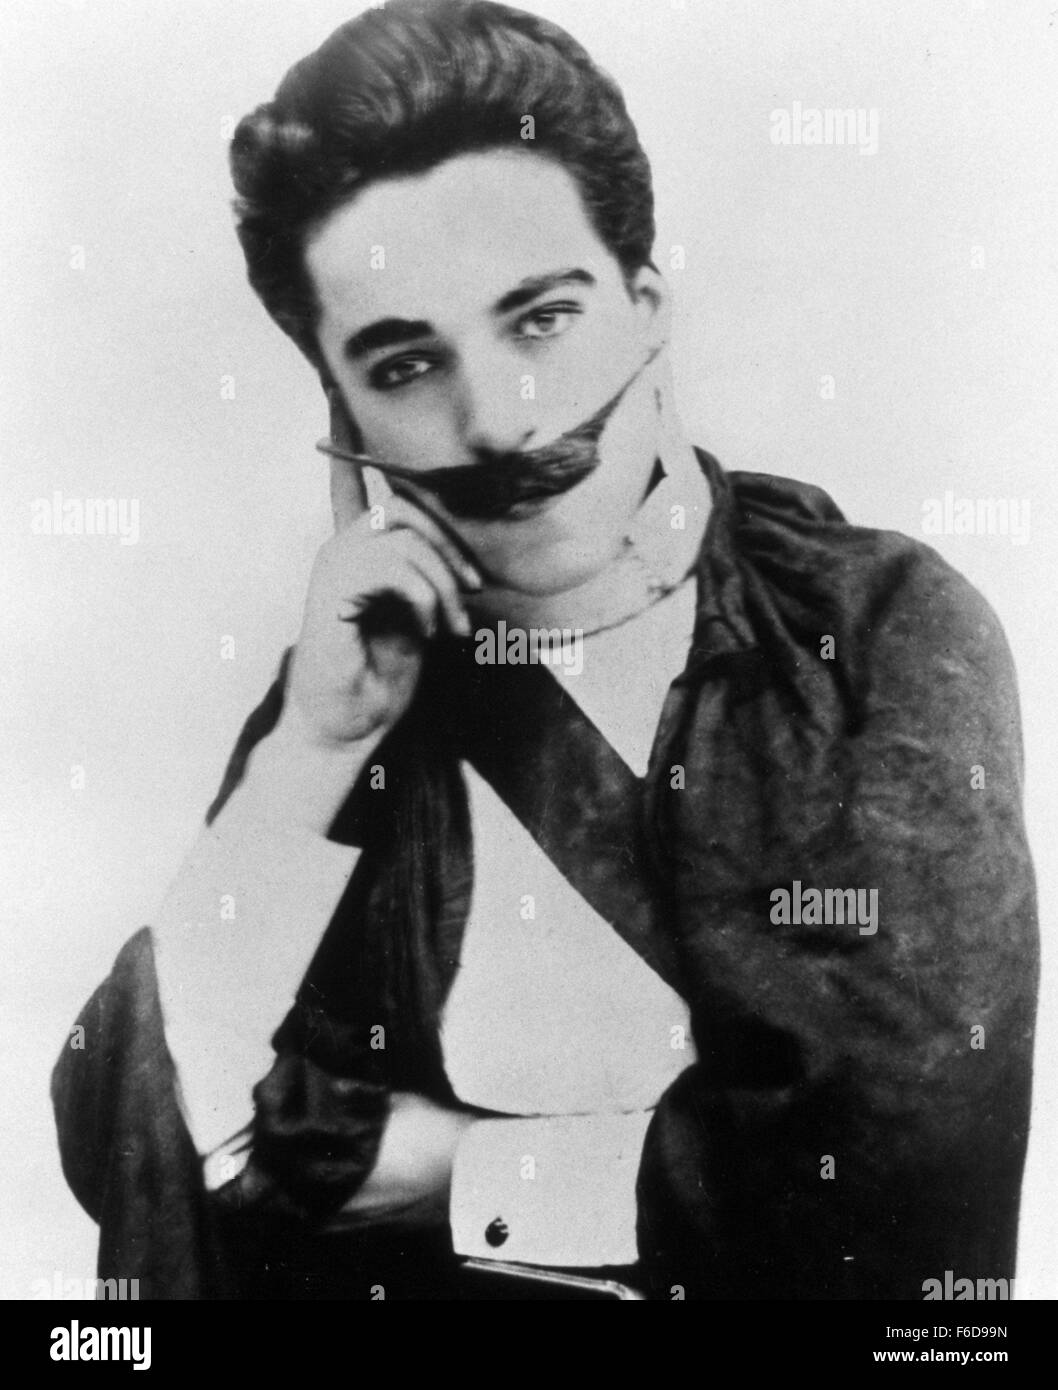 Datum der Freigabe: 1912 FILMTITEL: Arzt WALFORD BODIE STUDIO: SNAP PLOT: unbekannt.  Im Bild: CHARLES CHAPLIN. Stockfoto